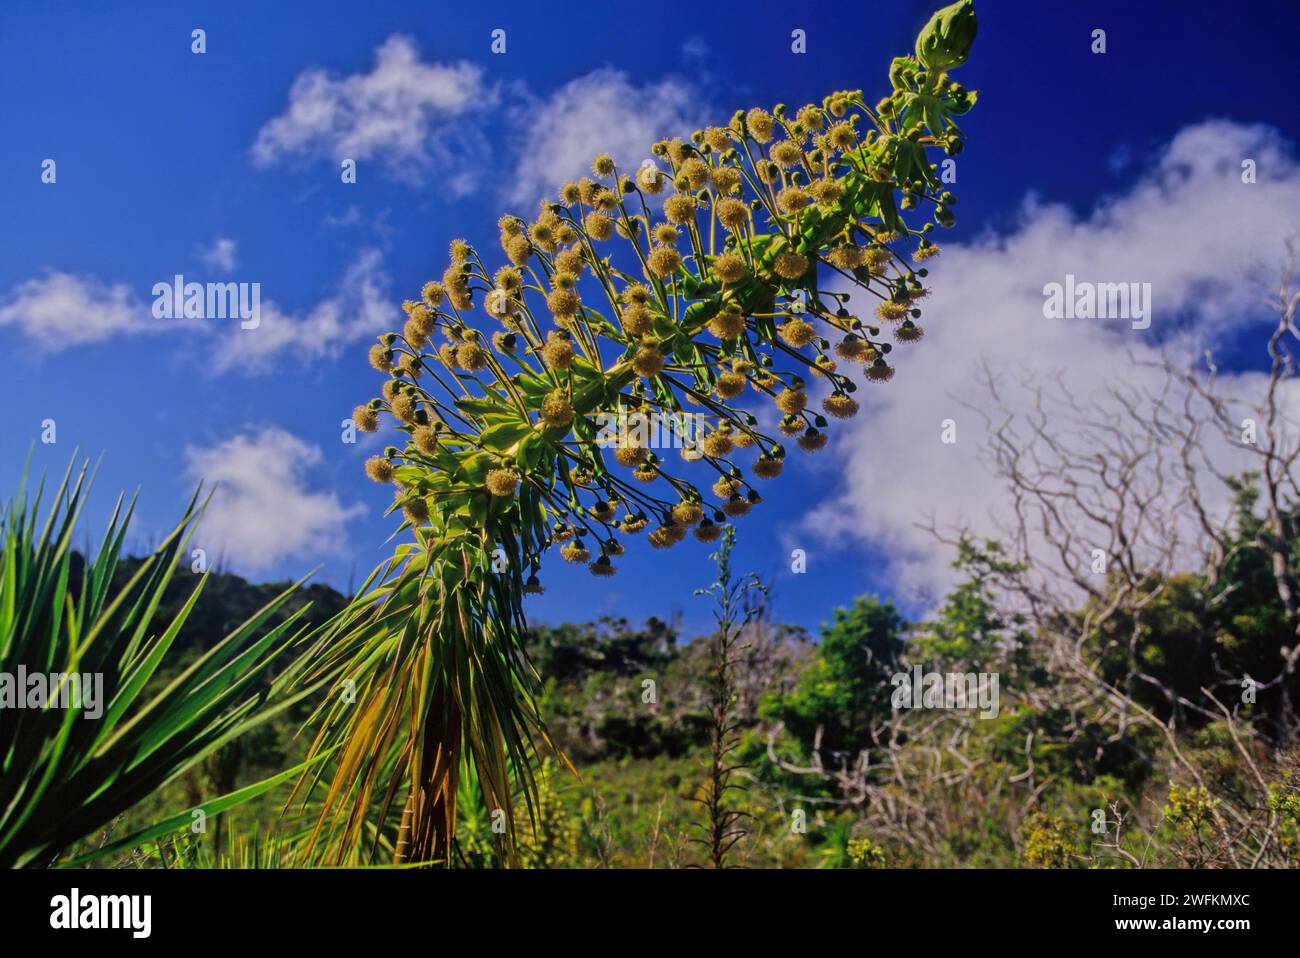 Wilkesia gymnoxiphium (iliau hawaïen), est une espèce de plante à fleurs de la famille des Asteraceae endémique de l'île de Kaua'i à Hawaï Banque D'Images